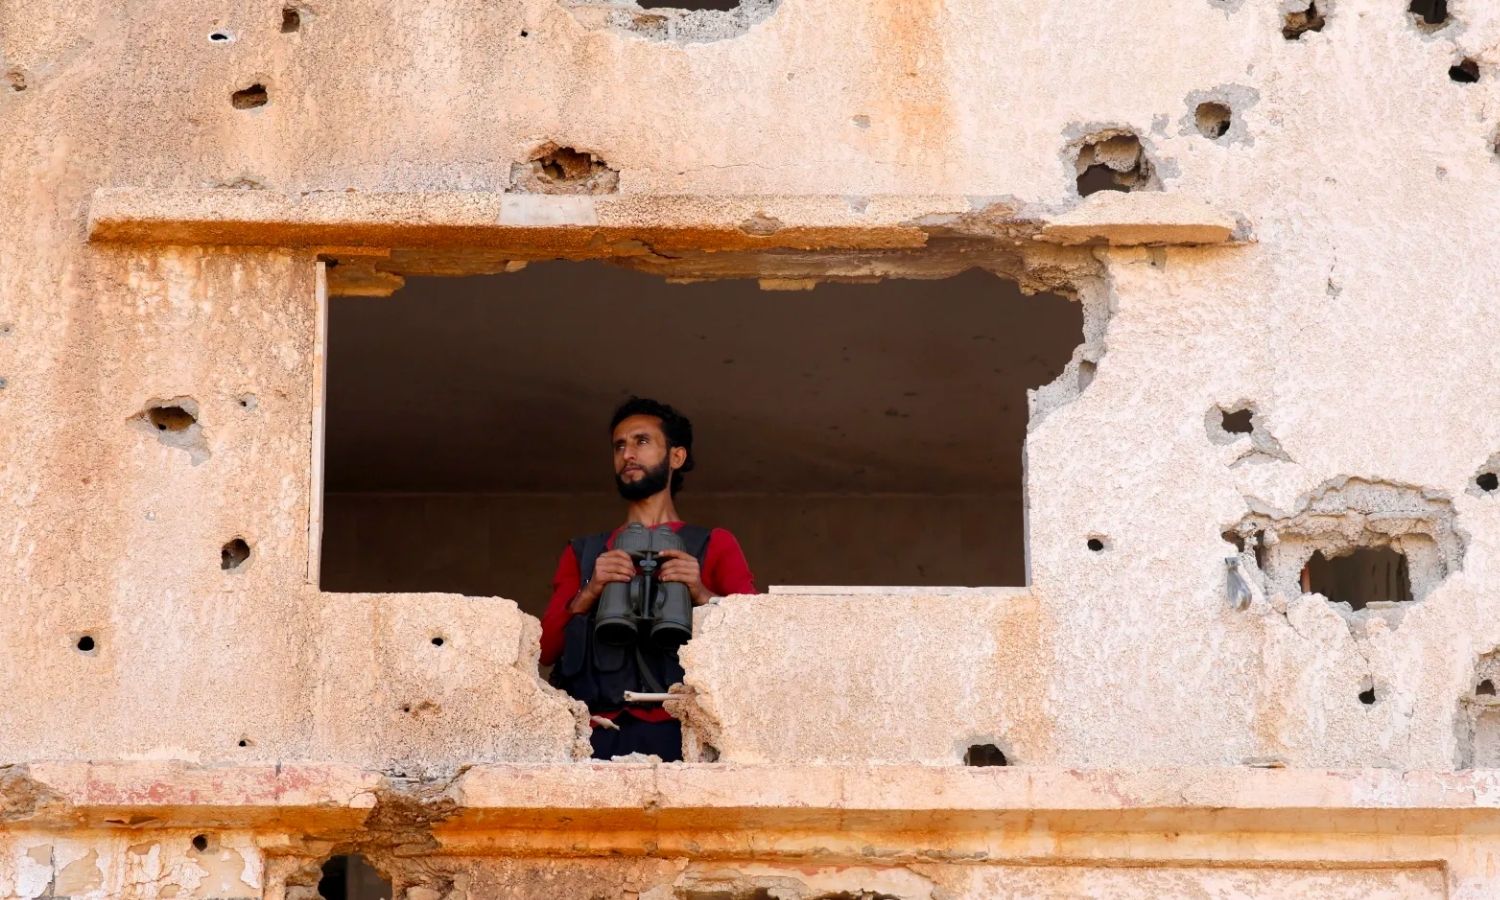 مقاتل في الجيش السوري الحر في بلدة اليادودة بريف درعا - أيار 2018 (رويترز/ علاء فقير)